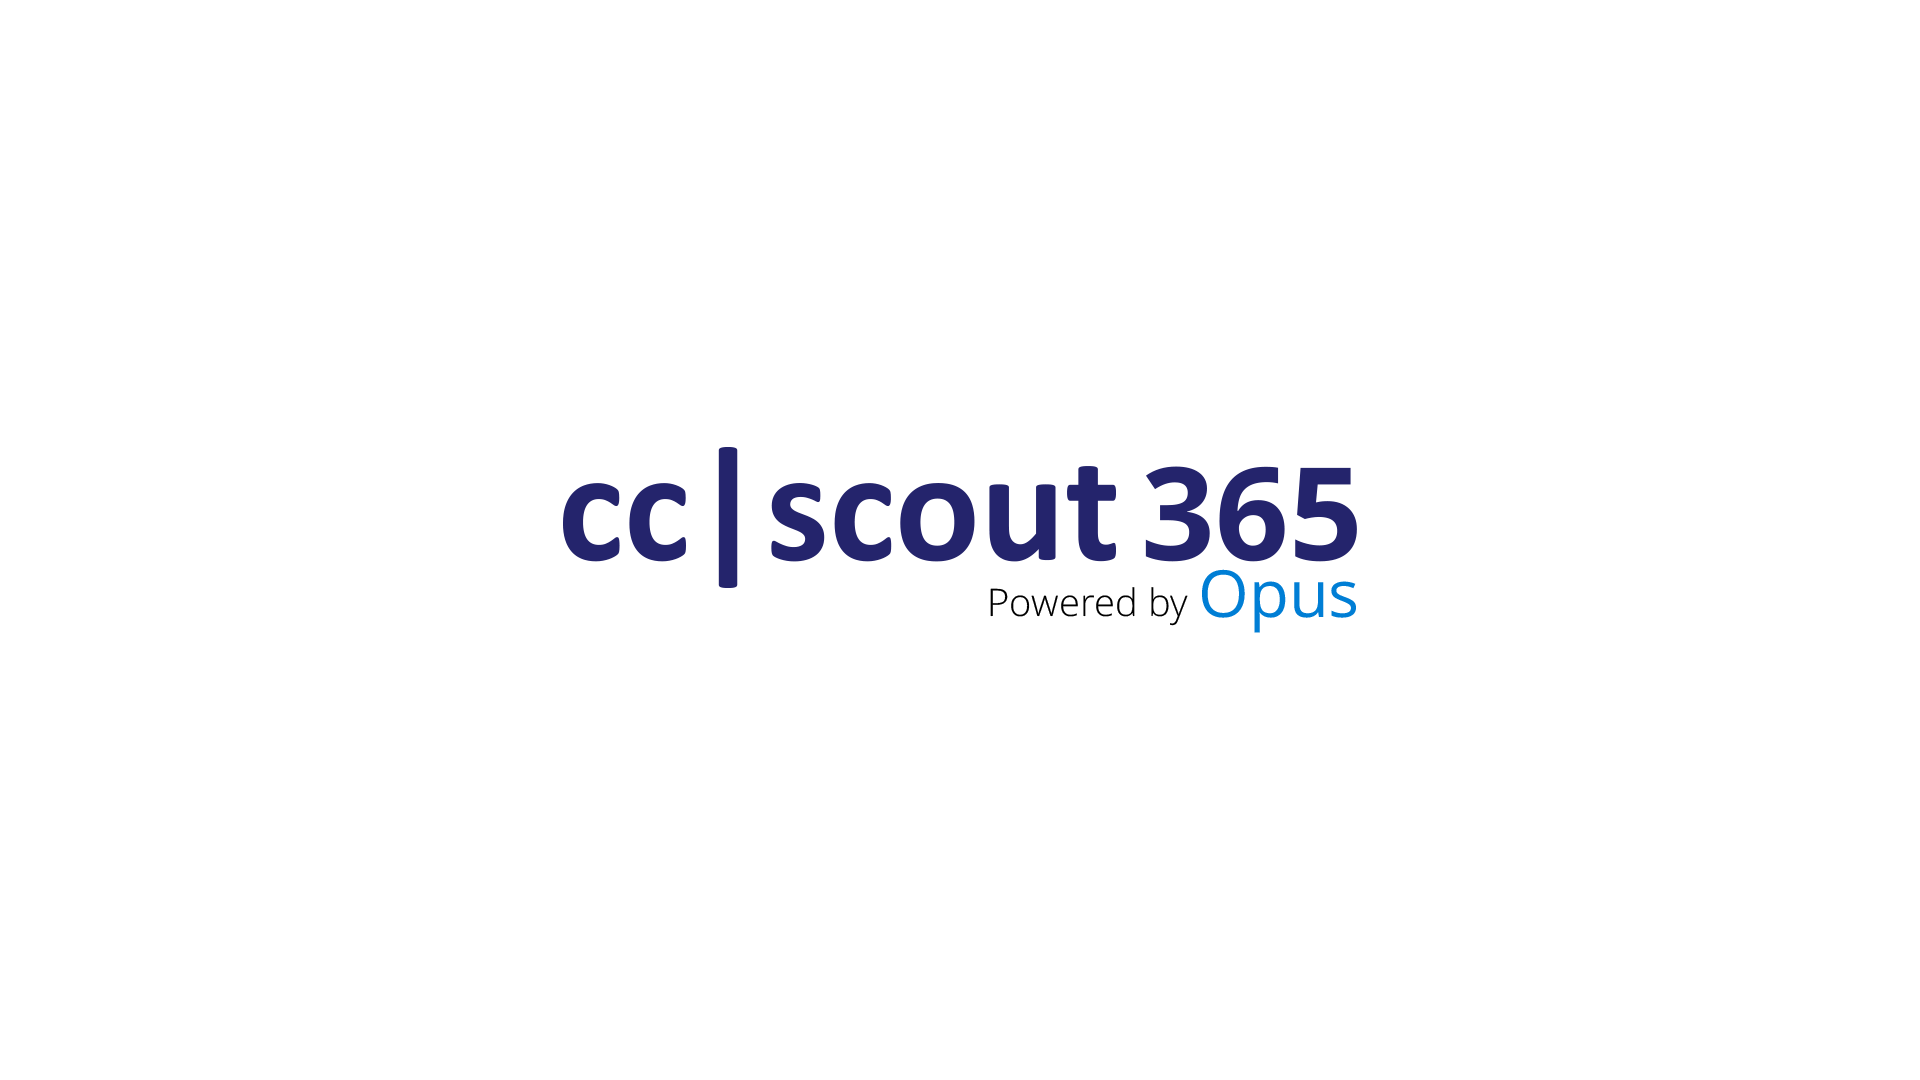 Bild: cc scout logo